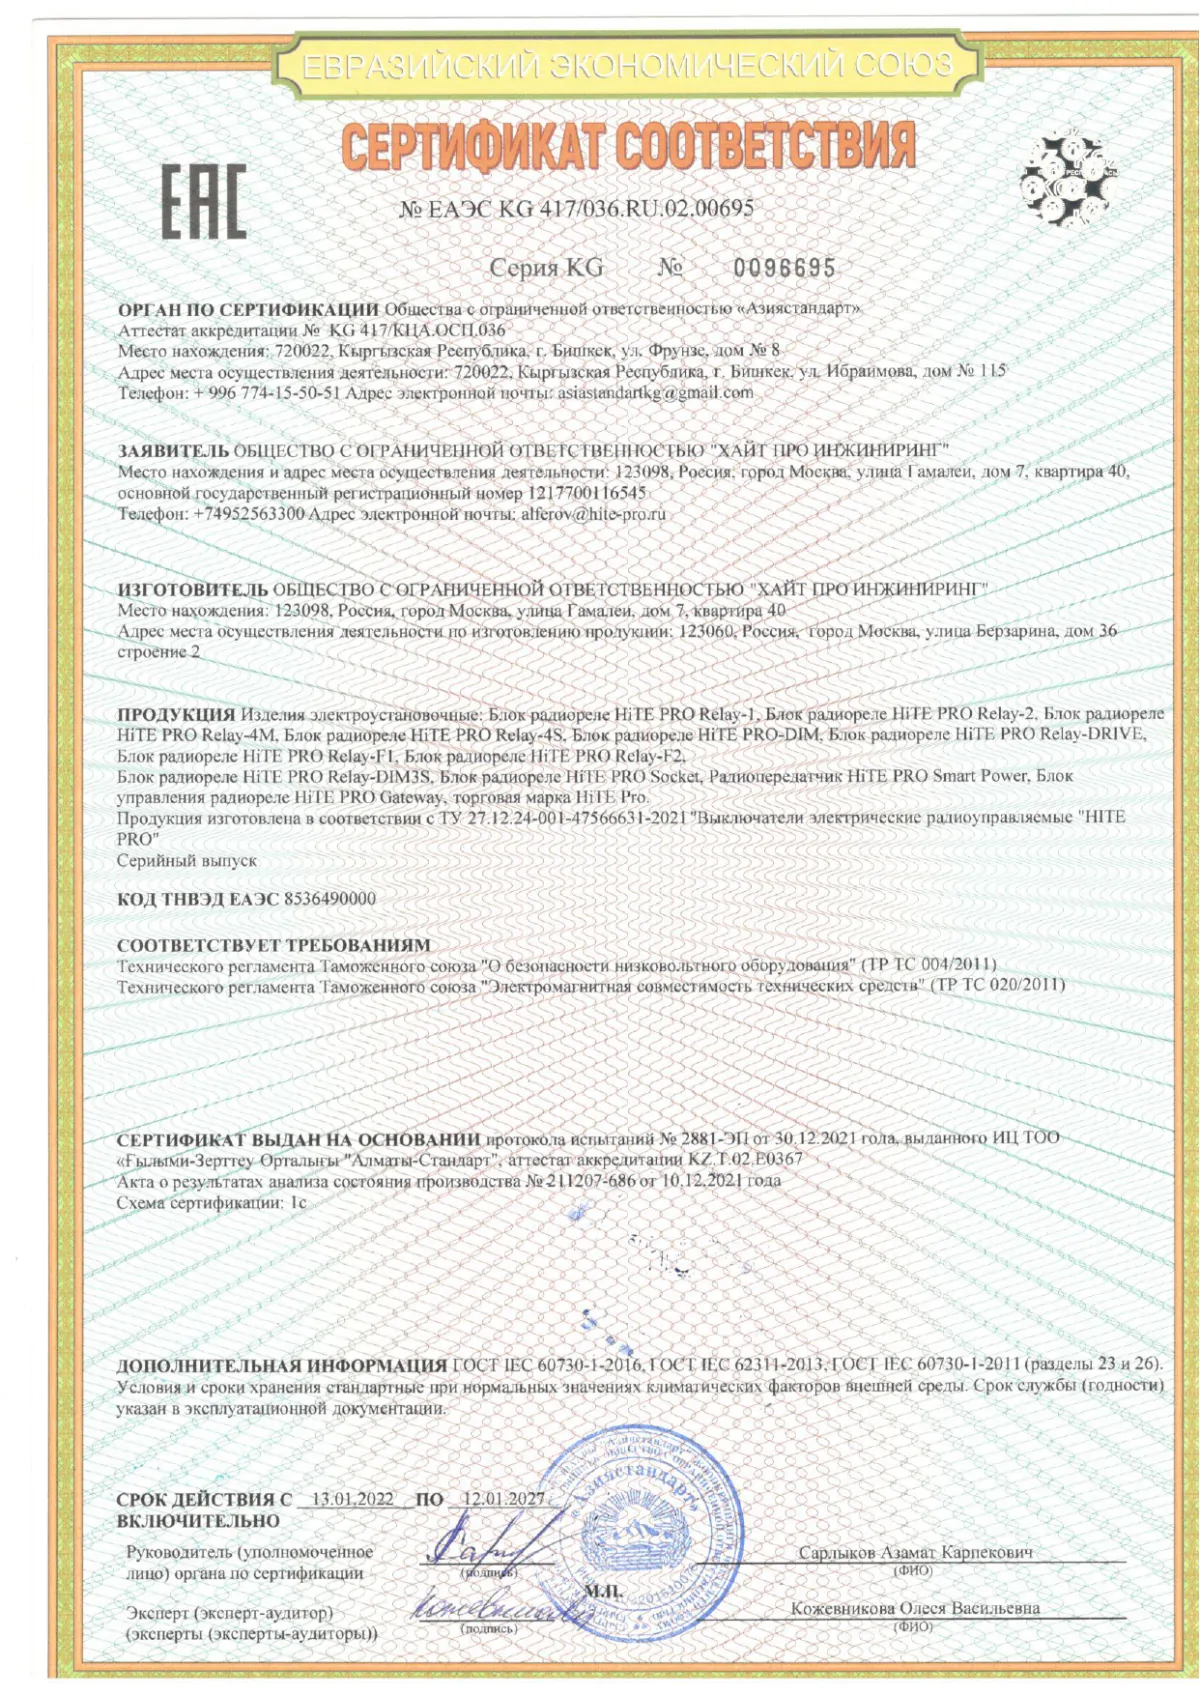 Сертификат Соответствия ТР ТС 004-020